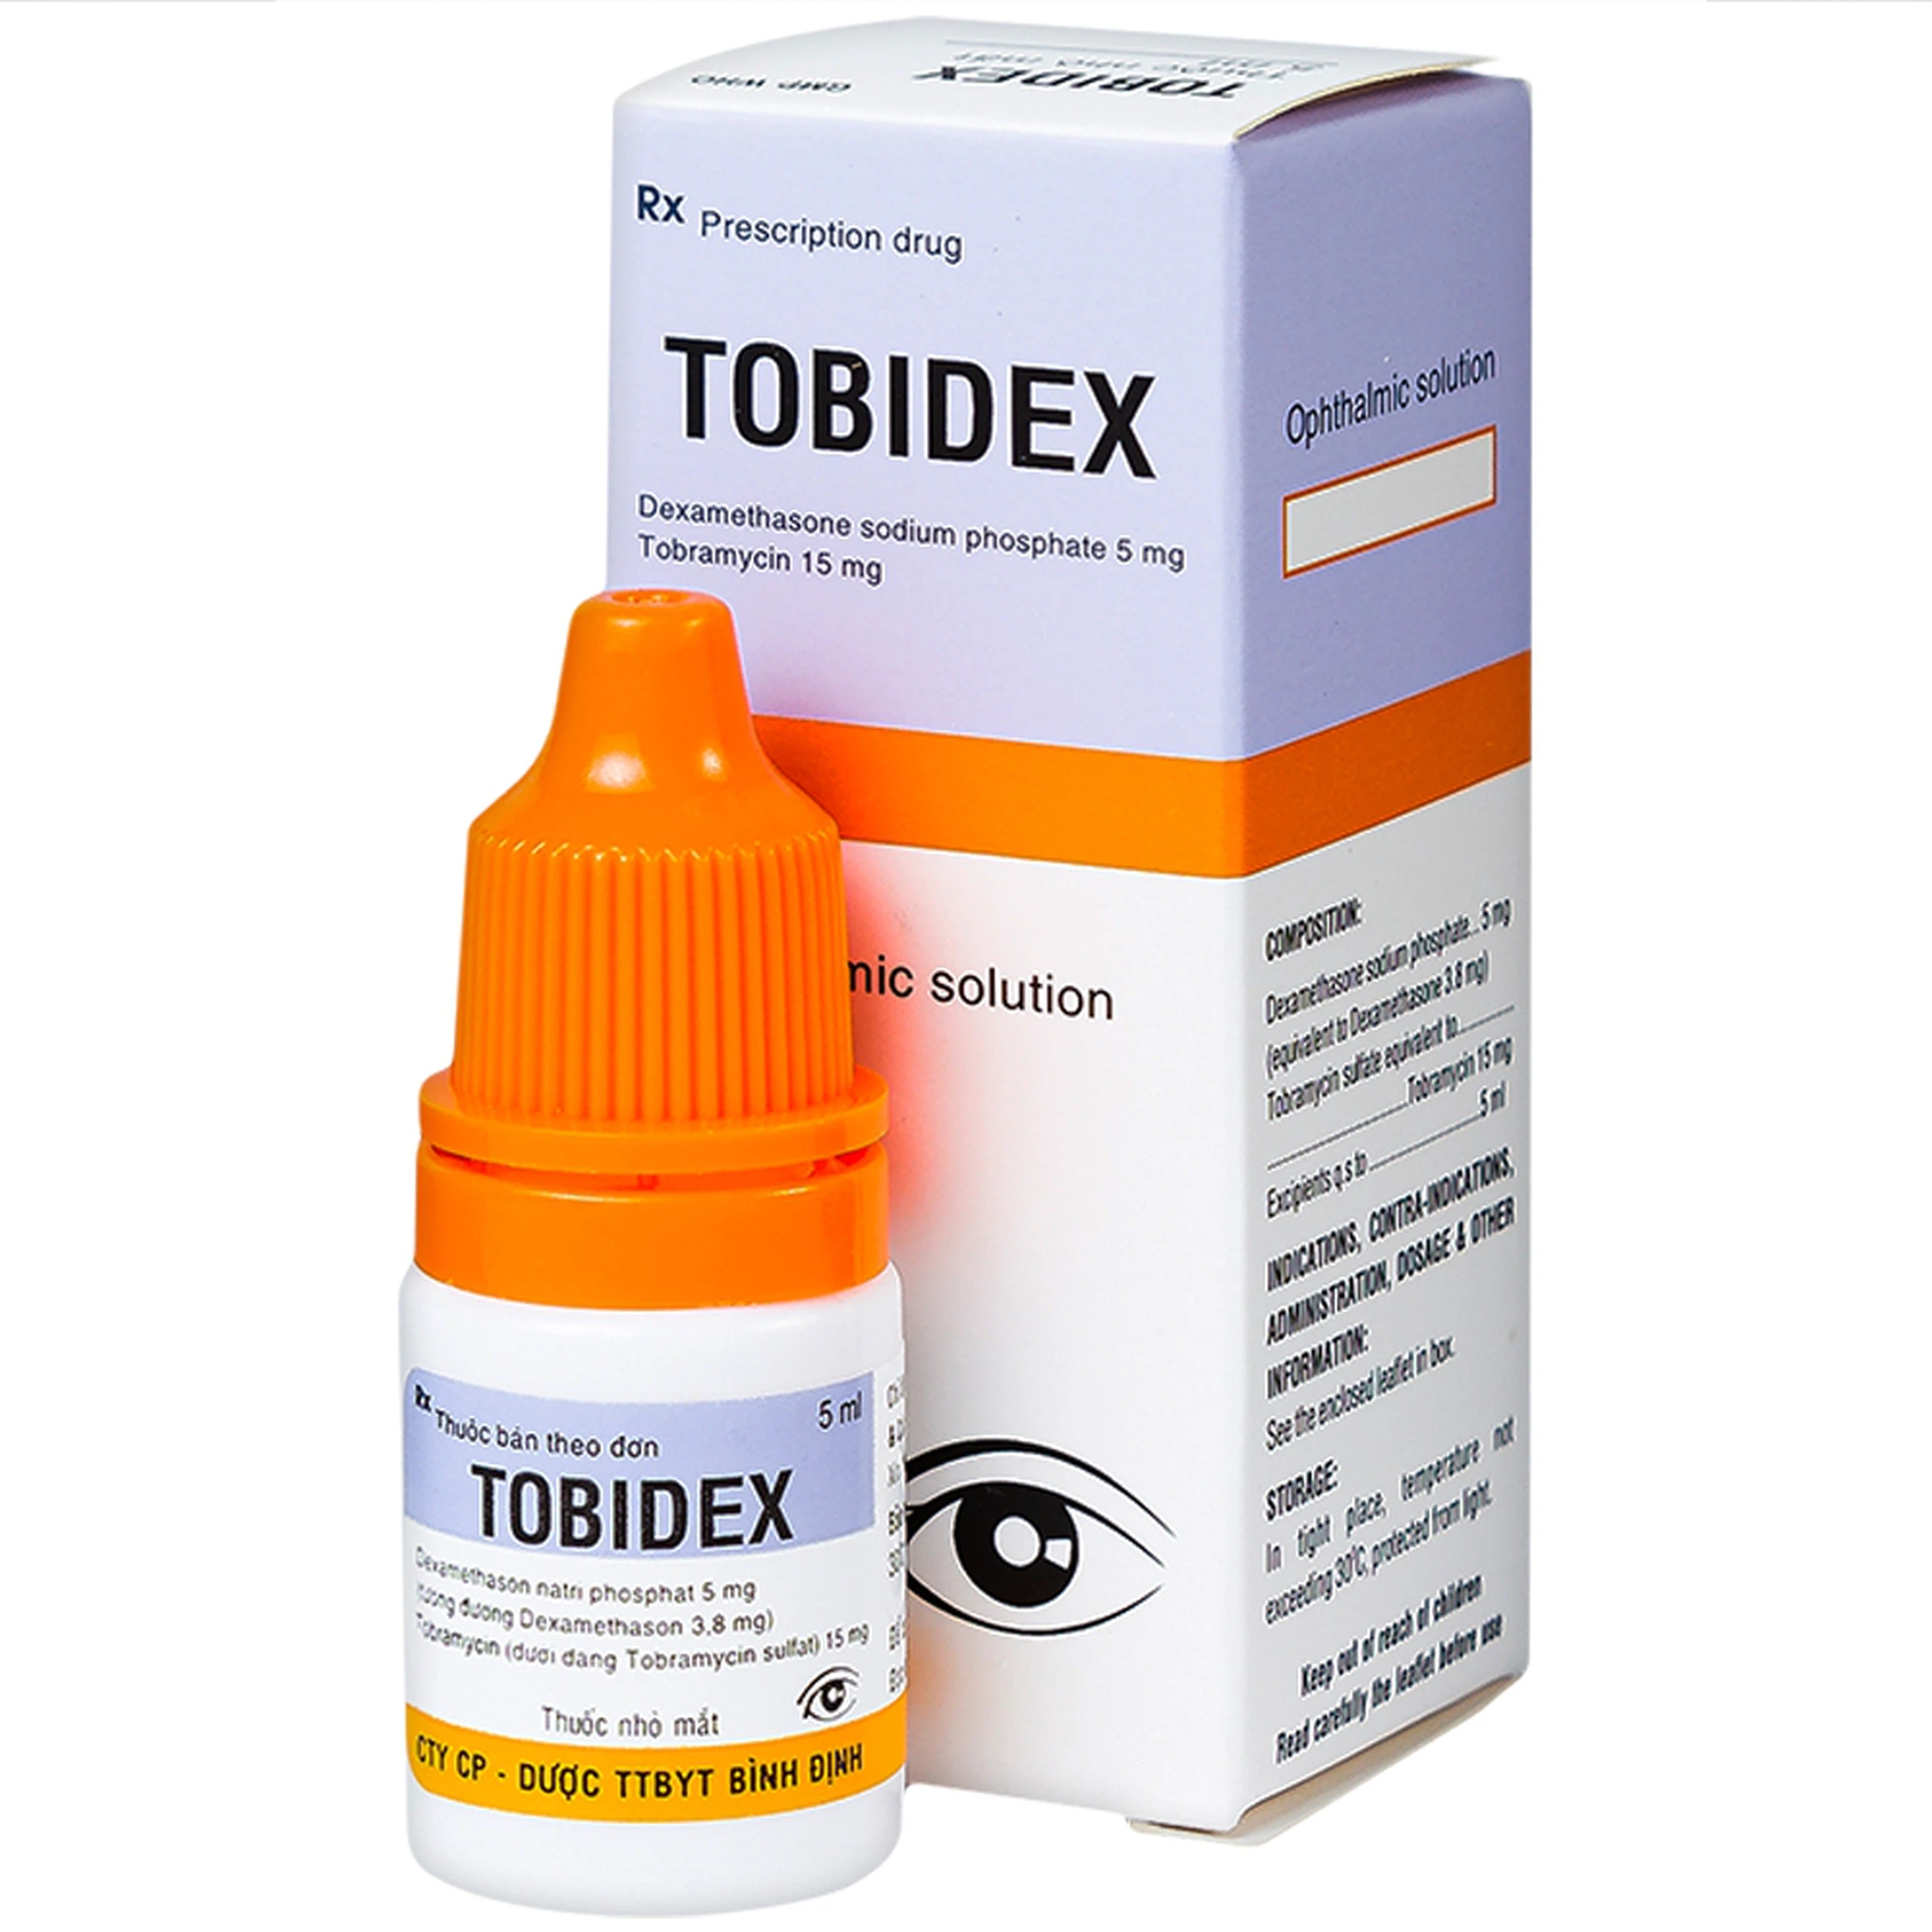 Thuốc nhỏ mắt Tobidex Bidiphar điều trị viêm mắt (5ml)